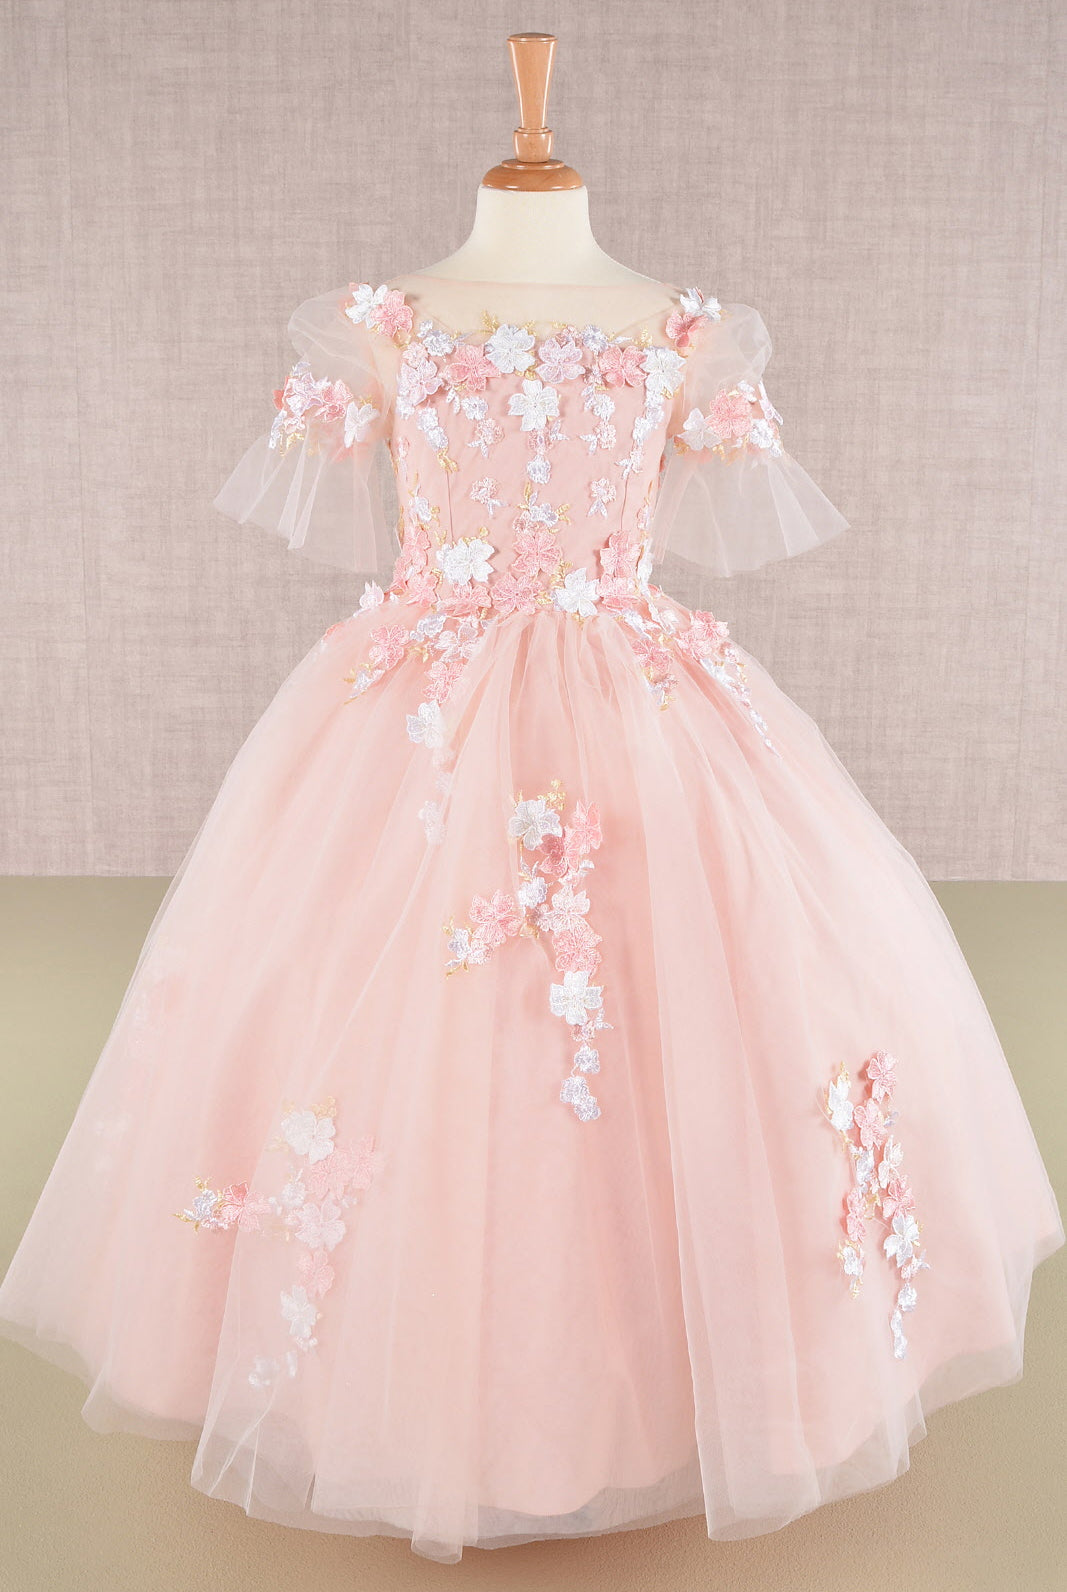 3D Floral Applique Mesh Kids Dress with Long Back Hem GLGK107-KIDS-smcfashion.com